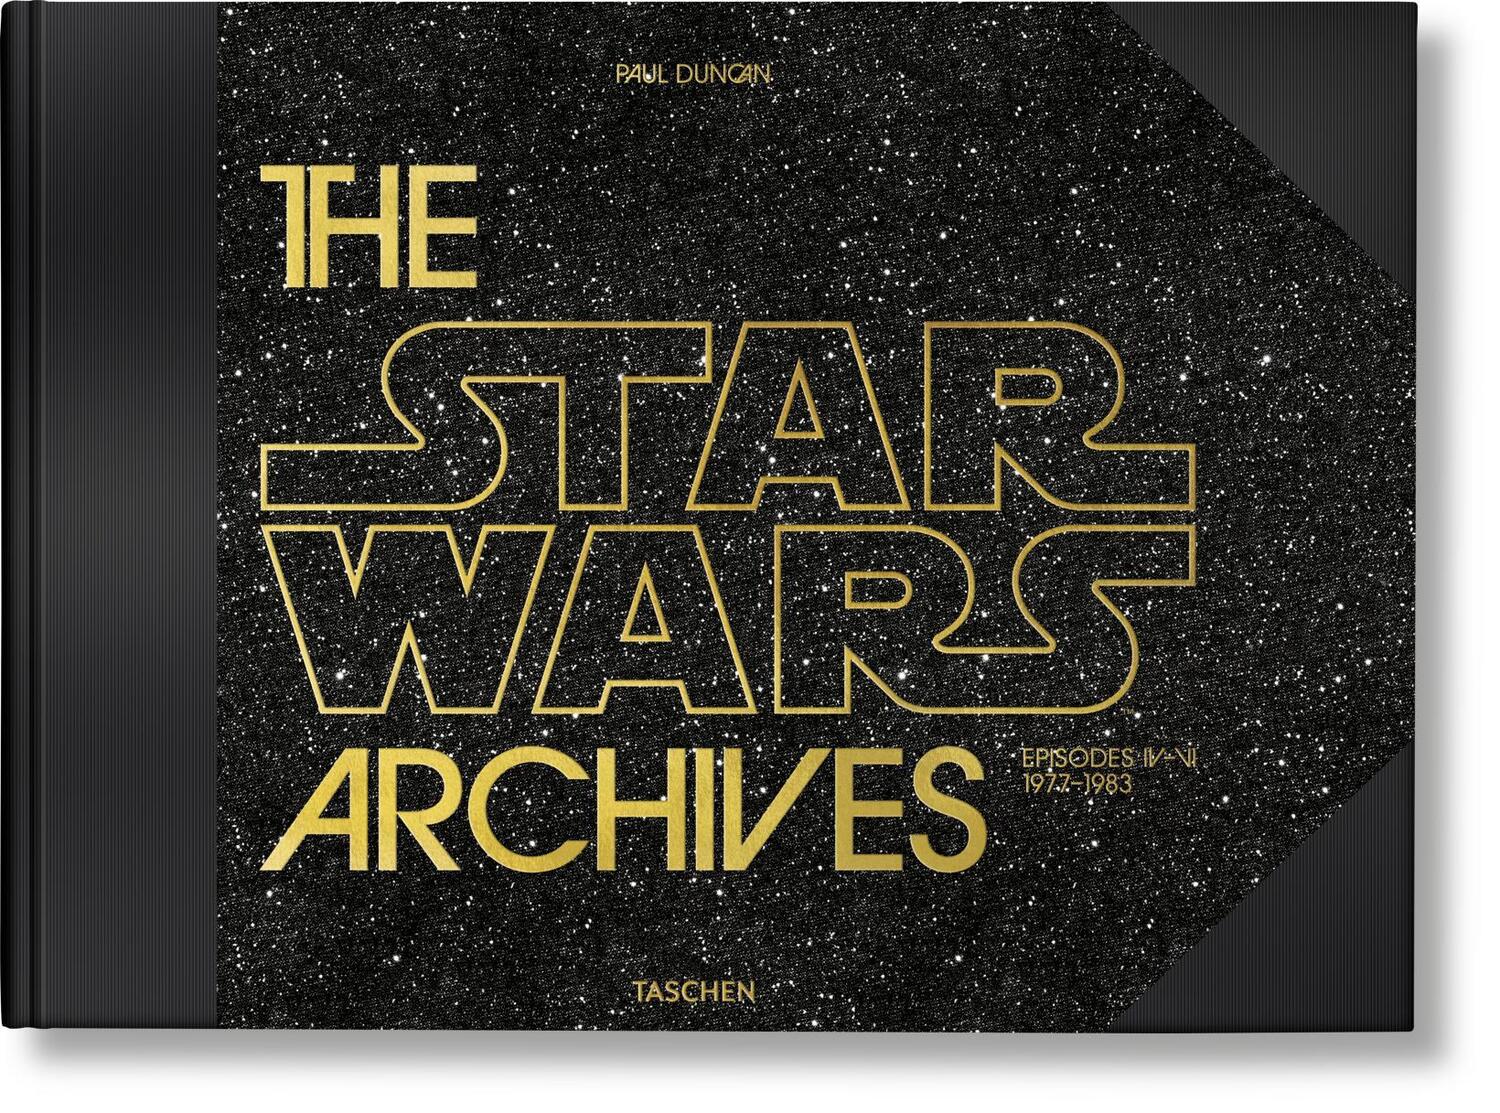 Das Star Wars Archiv: Episoden IV-VI 1977-1983 - Duncan, Paul